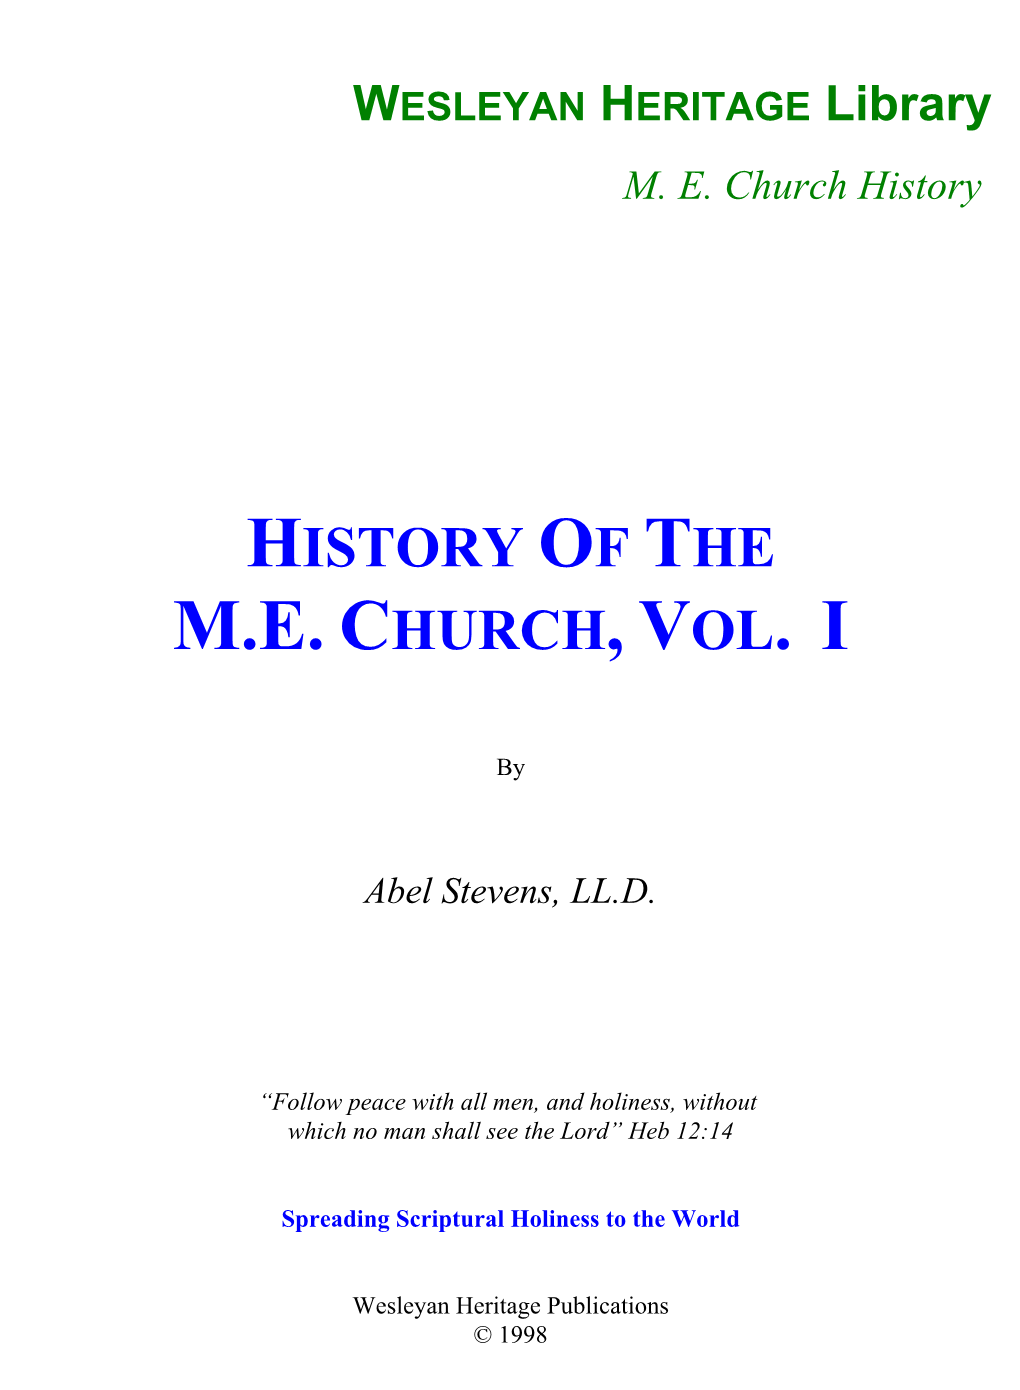 History of the M.E. Church, Vol. I